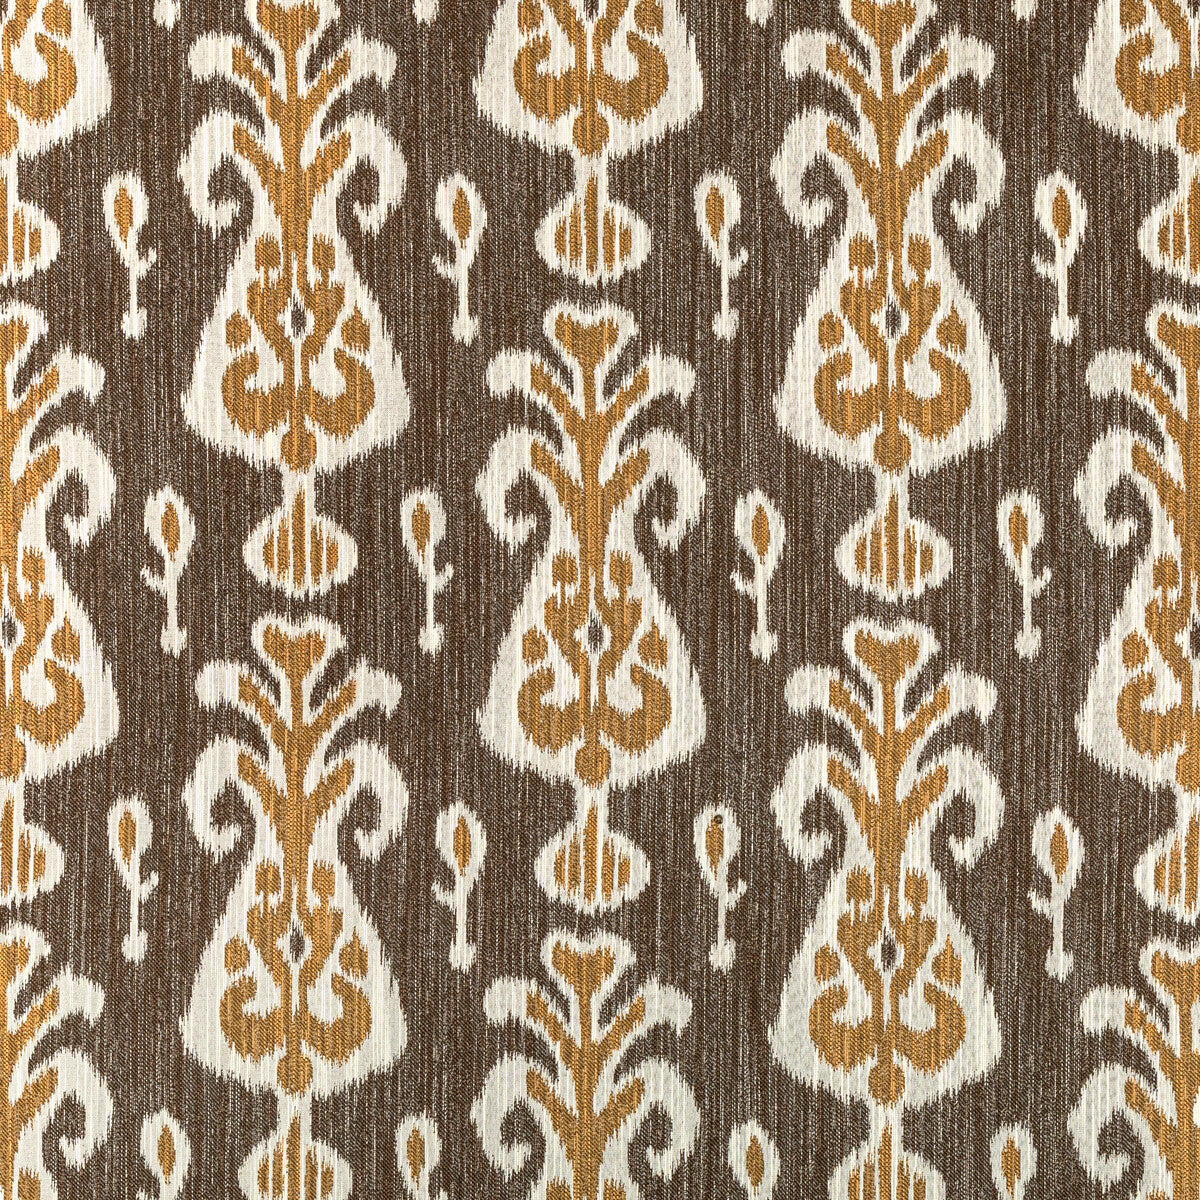 Kravet Design fabric in 36760-640 color - pattern 36760.640.0 - by Kravet Design